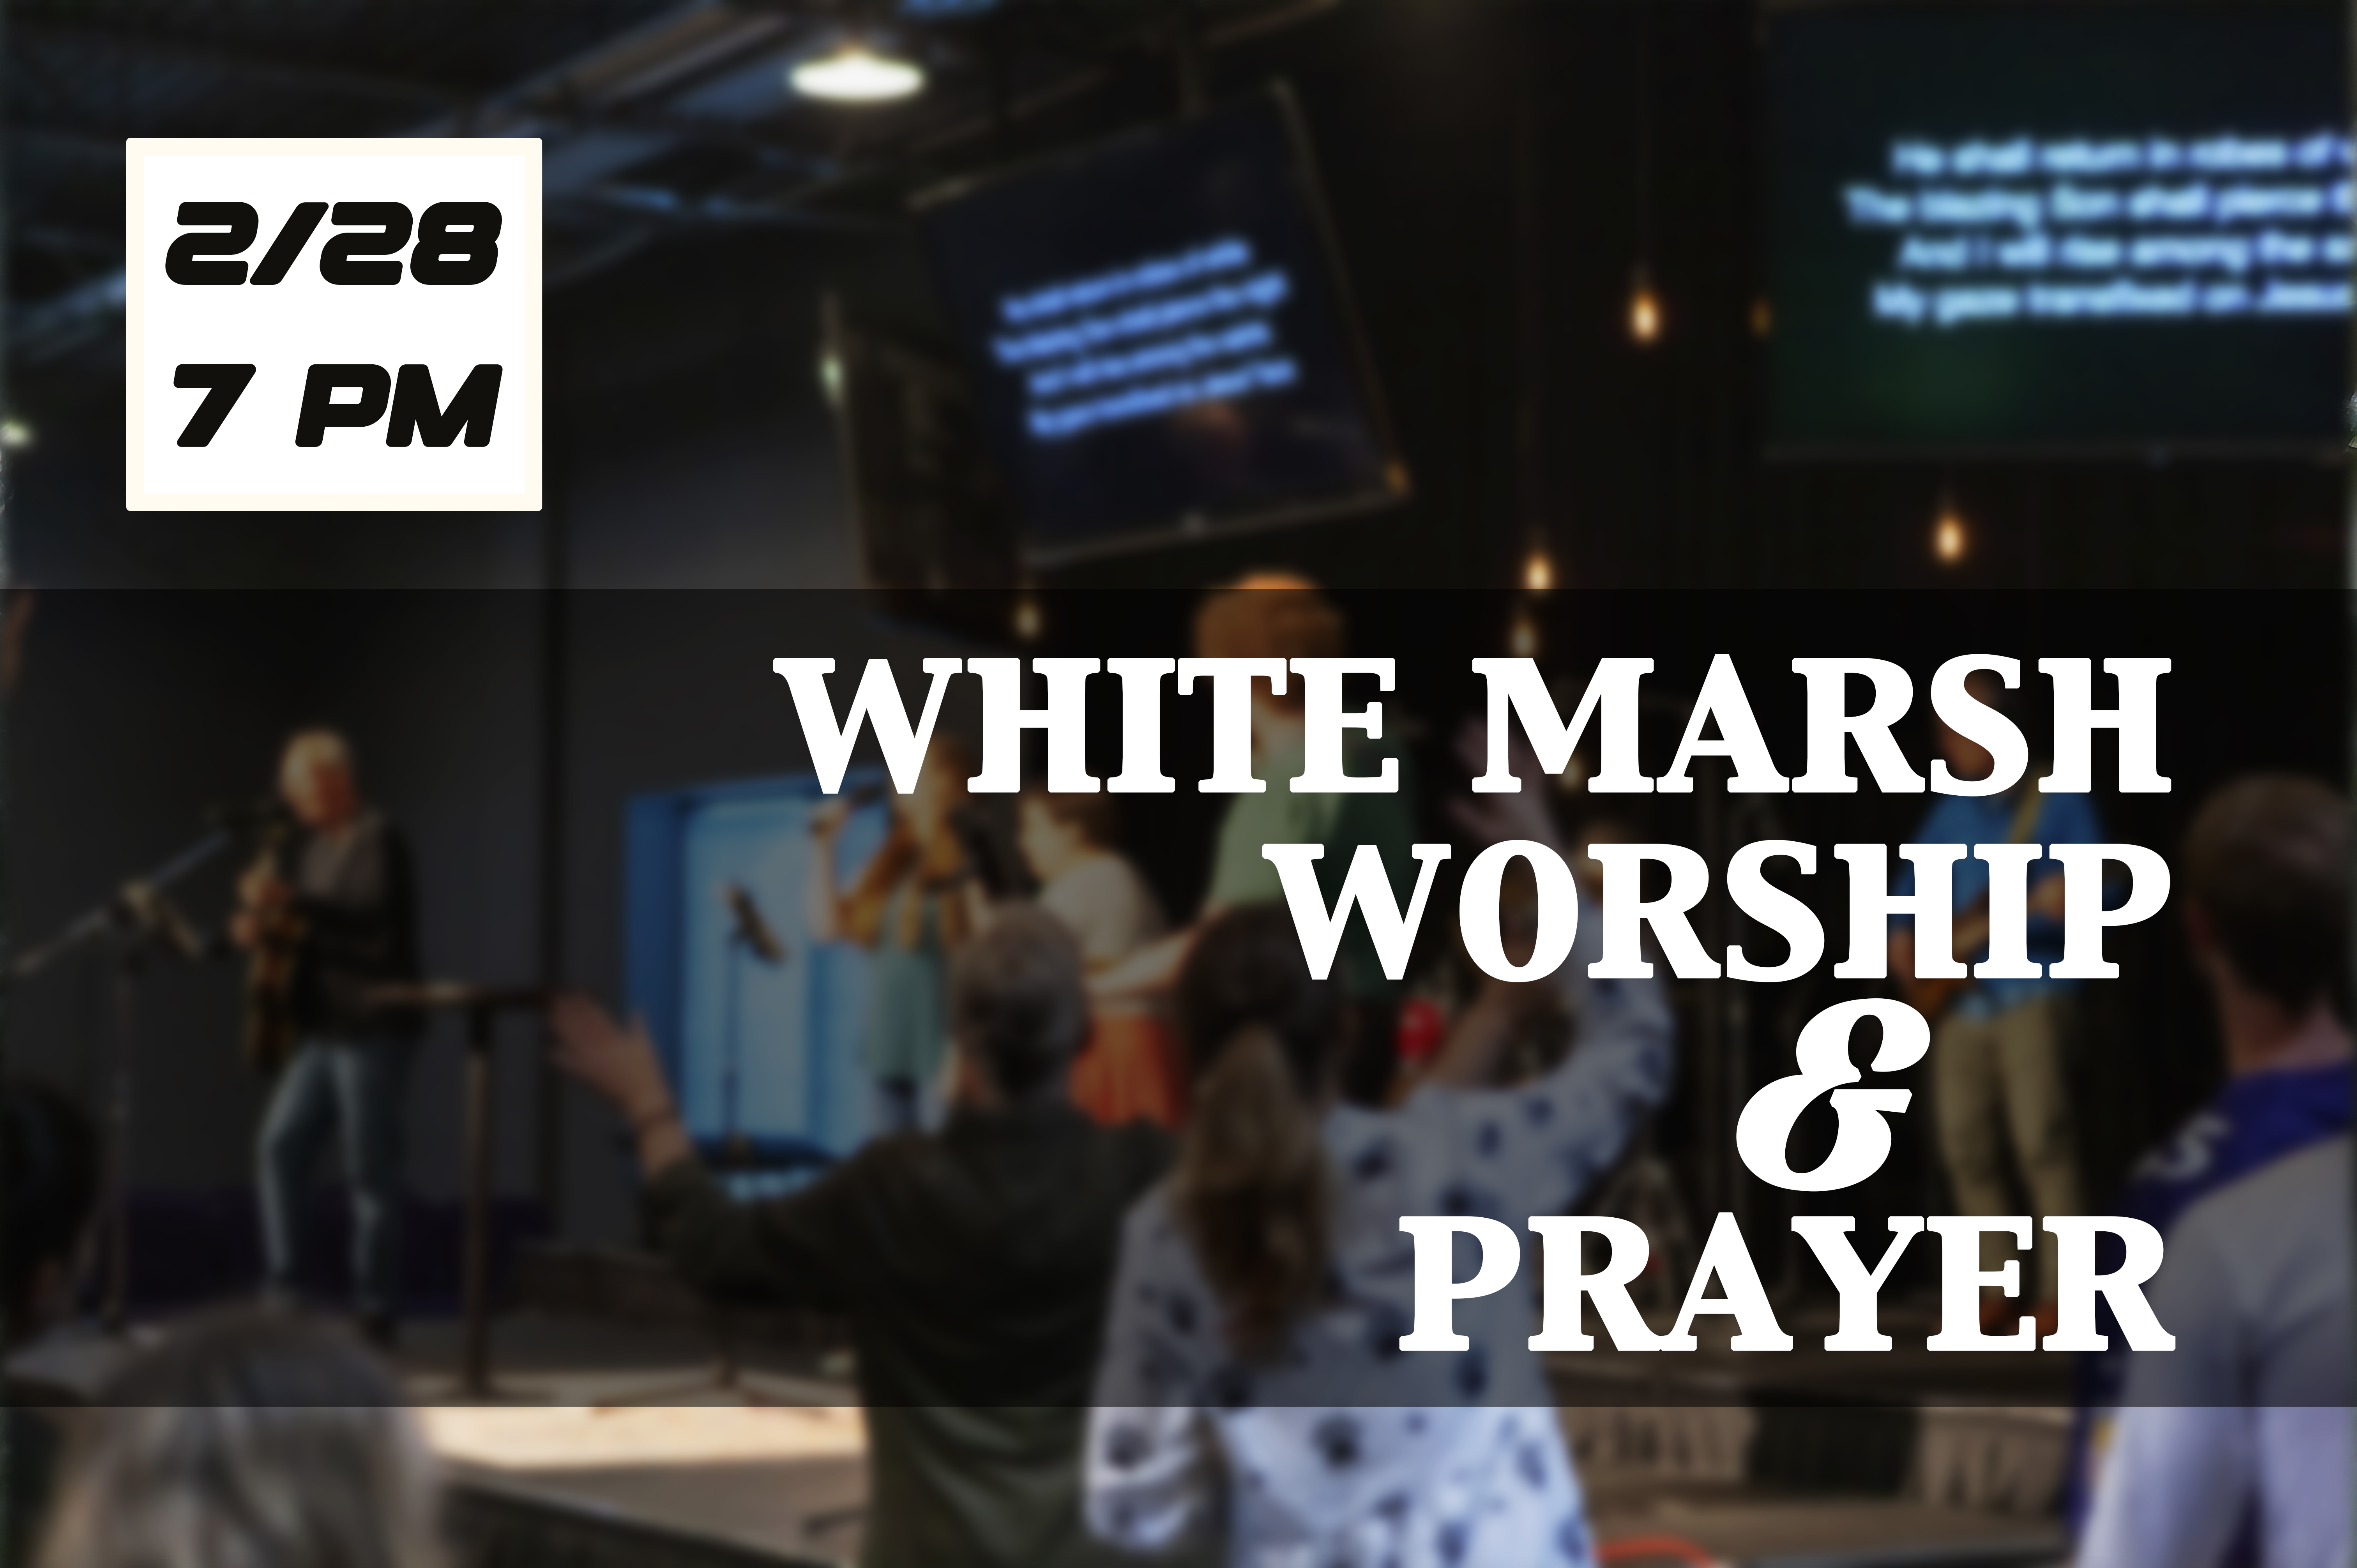 wm worship and prayer 2 28 24 image